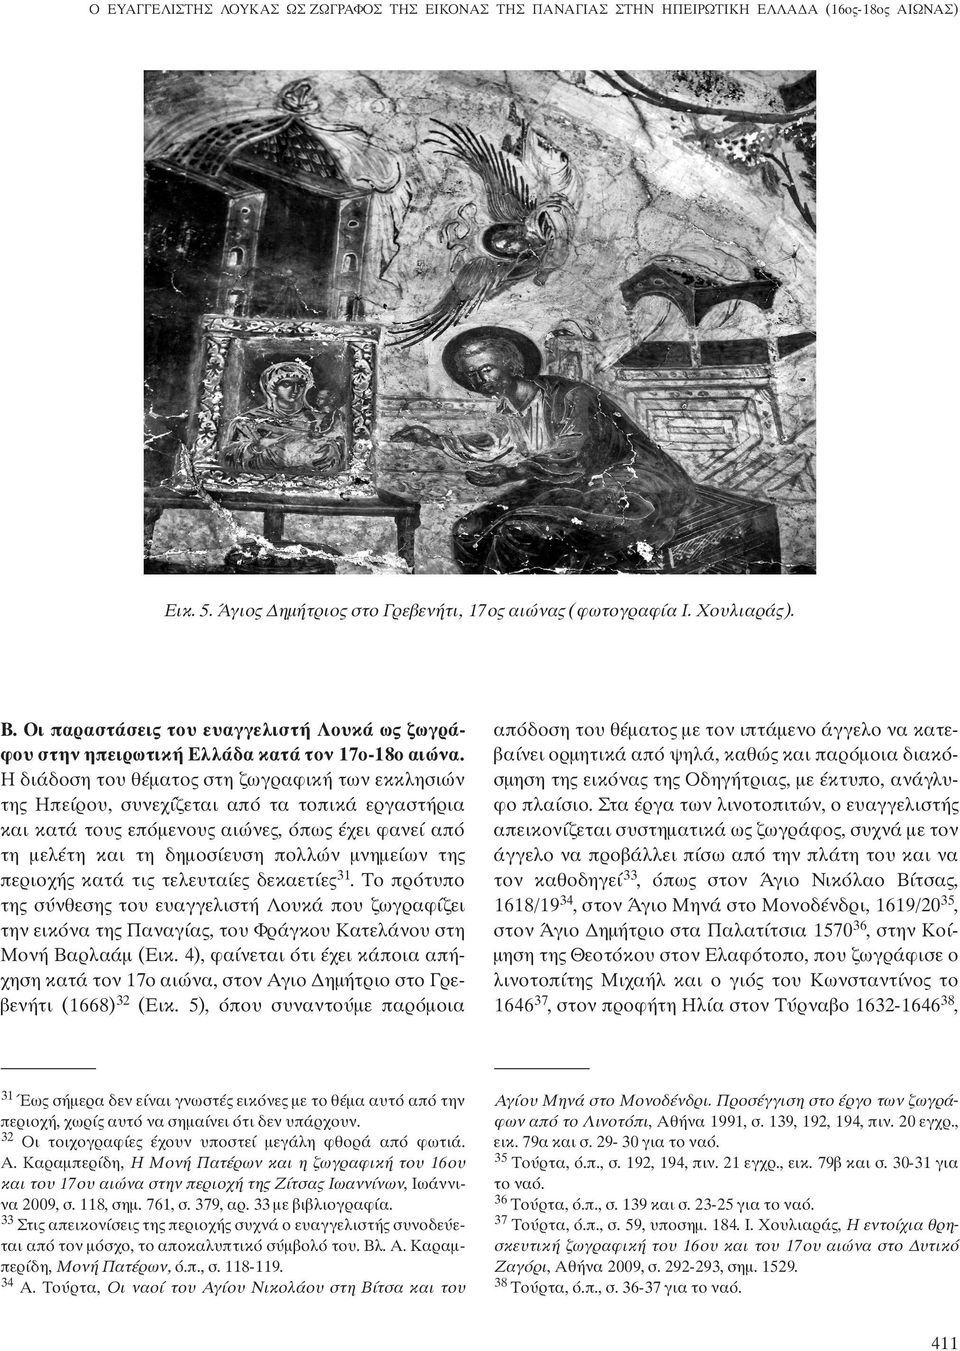 Η διάδοση του θέματος στη ζωγραφική των εκκλησιών της Ηπείρου, συνεχίζεται από τα τοπικά εργαστήρια και κατά τους επόμενους αιώνες, όπως έχει φανεί από τη μελέτη και τη δημοσίευση πολλών μνημείων της